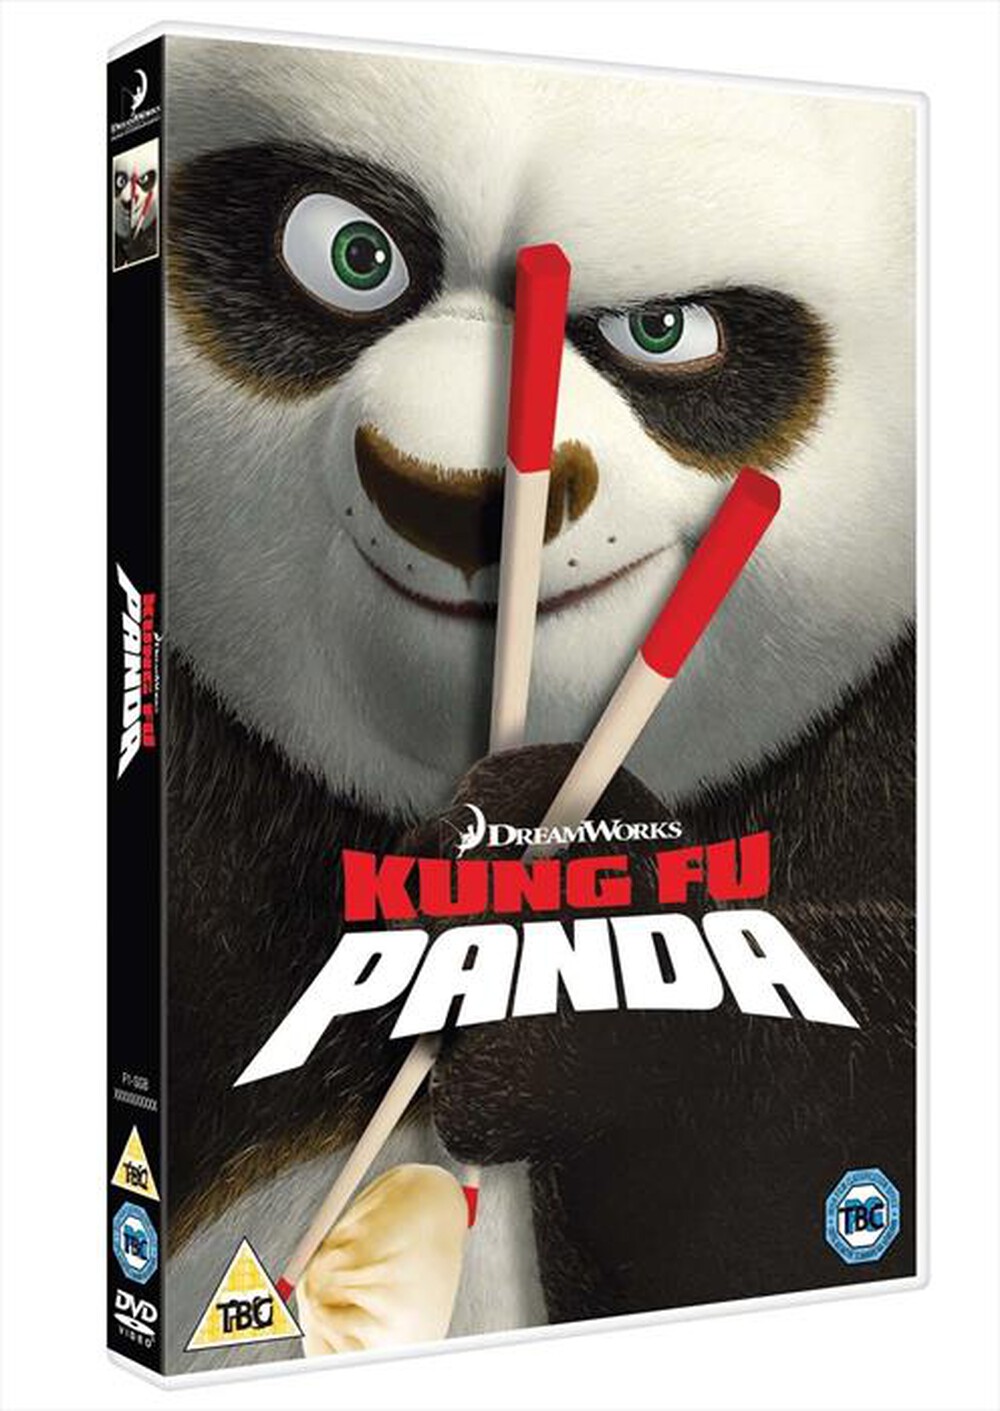 "WALT DISNEY - Kung Fu Panda (3D)"